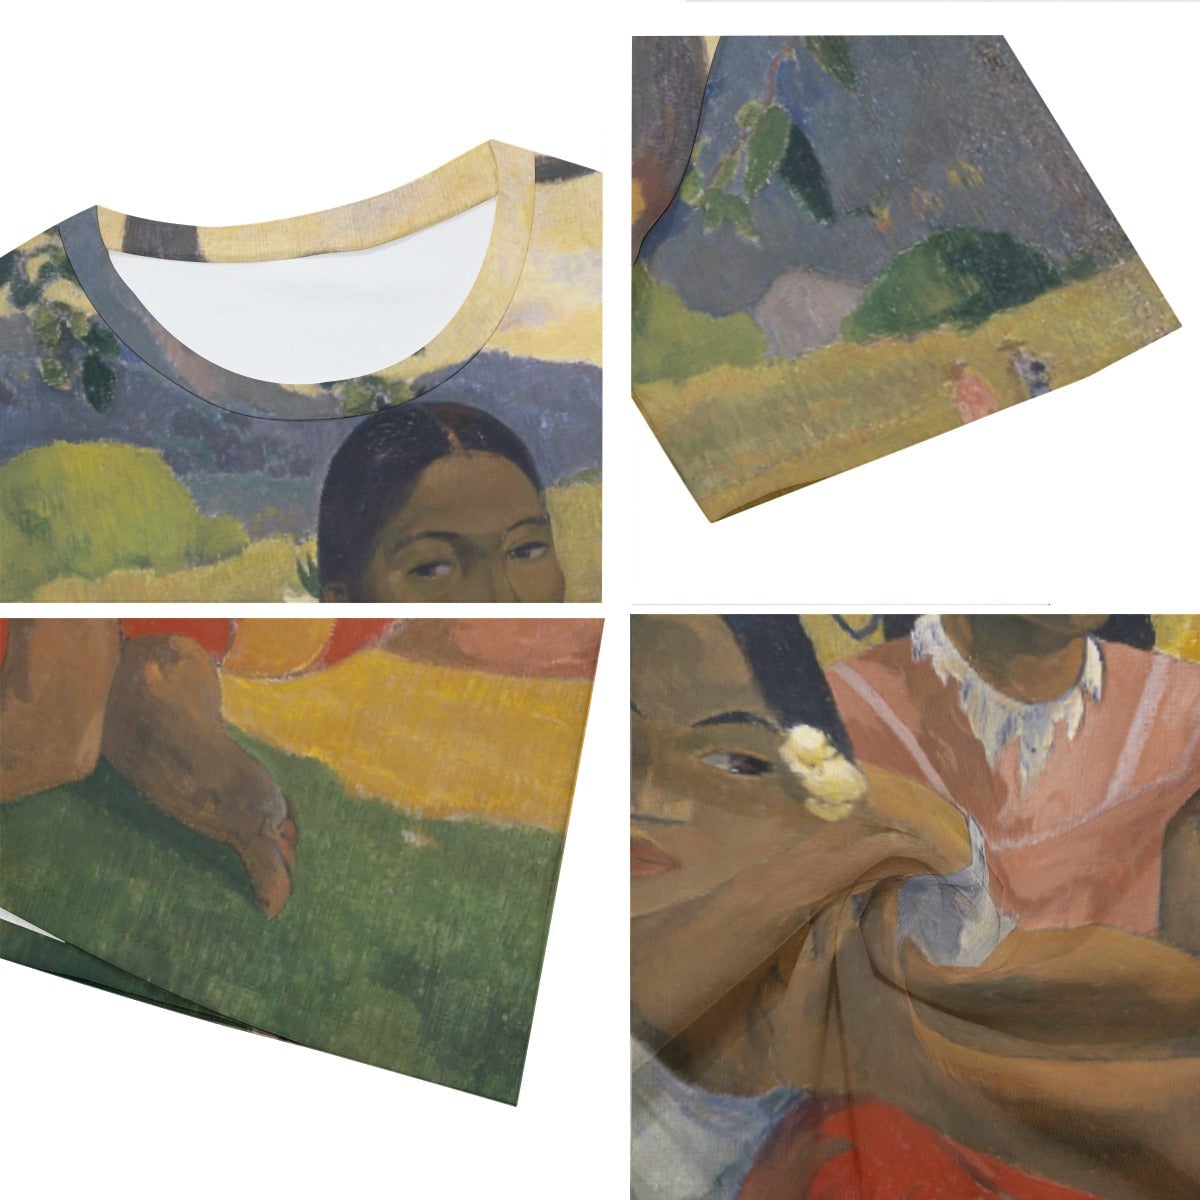 Paul Gauguin Nafea Faa Ipoipo T-Shirt